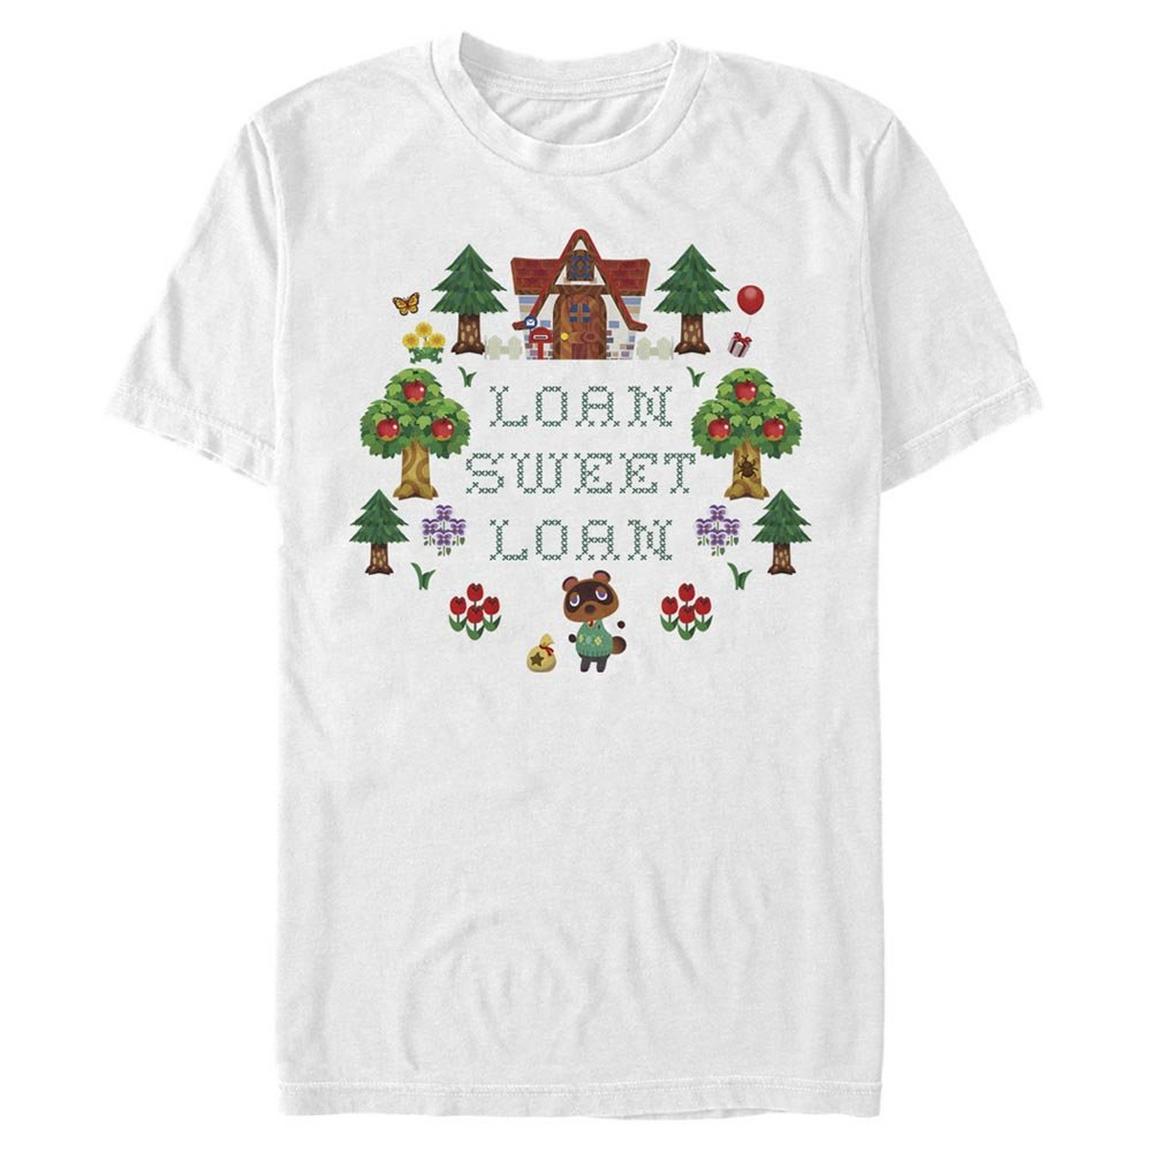 Animal Crossing Loan Sweet Loan Cross Stitch T-Shirt, Size: 3XL, Fifth Sun